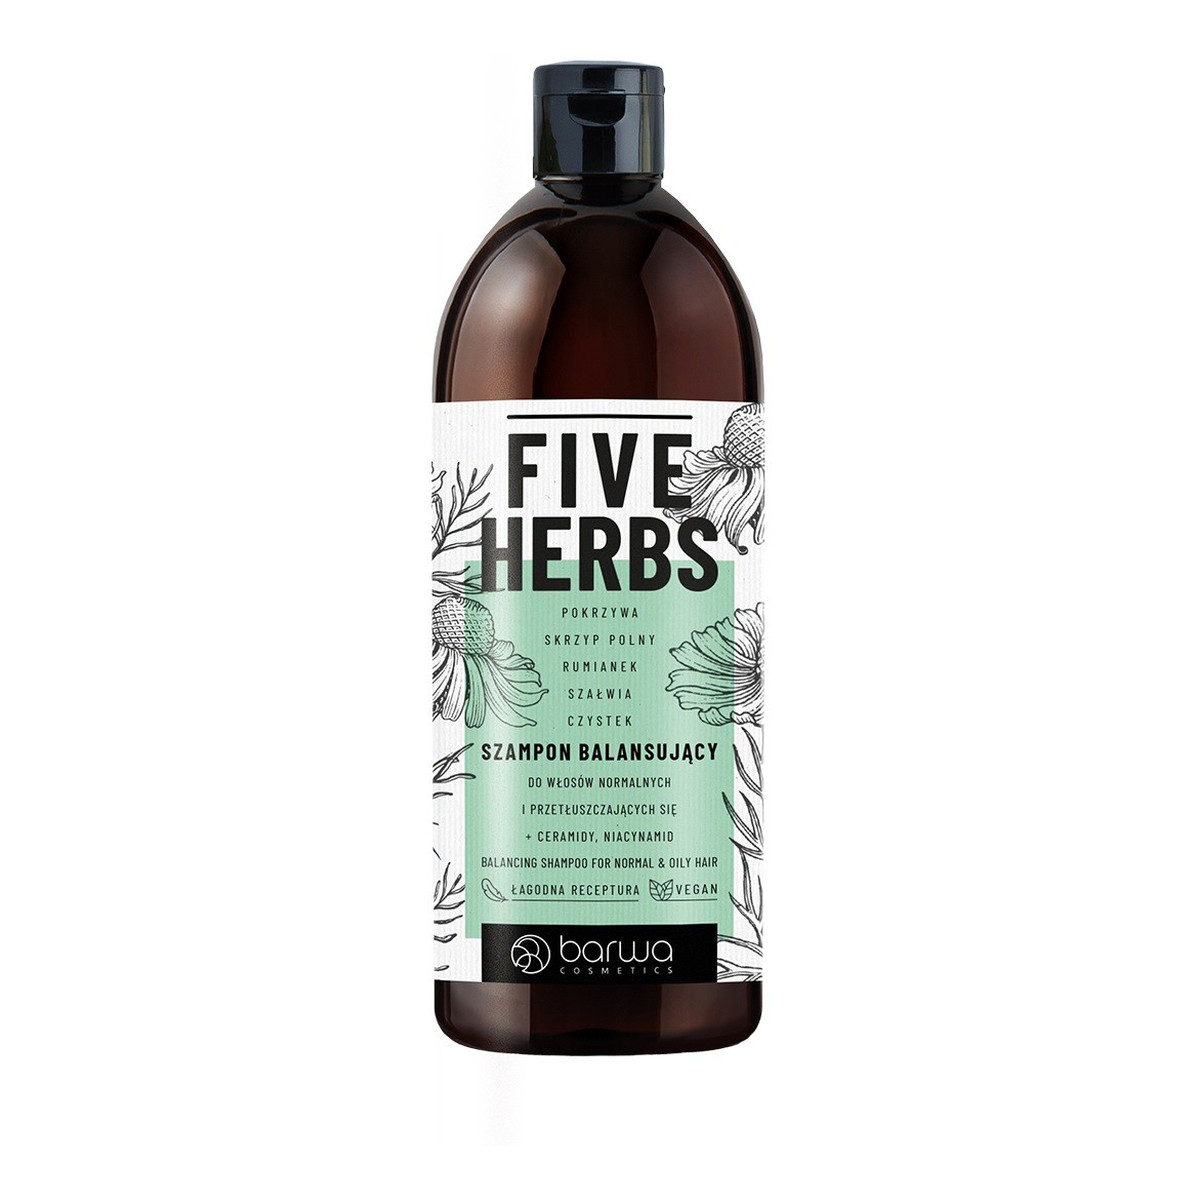 Barwa Five Herbs Szampon balansujący - do włosów normalnych i przetłuszczających się 480ml